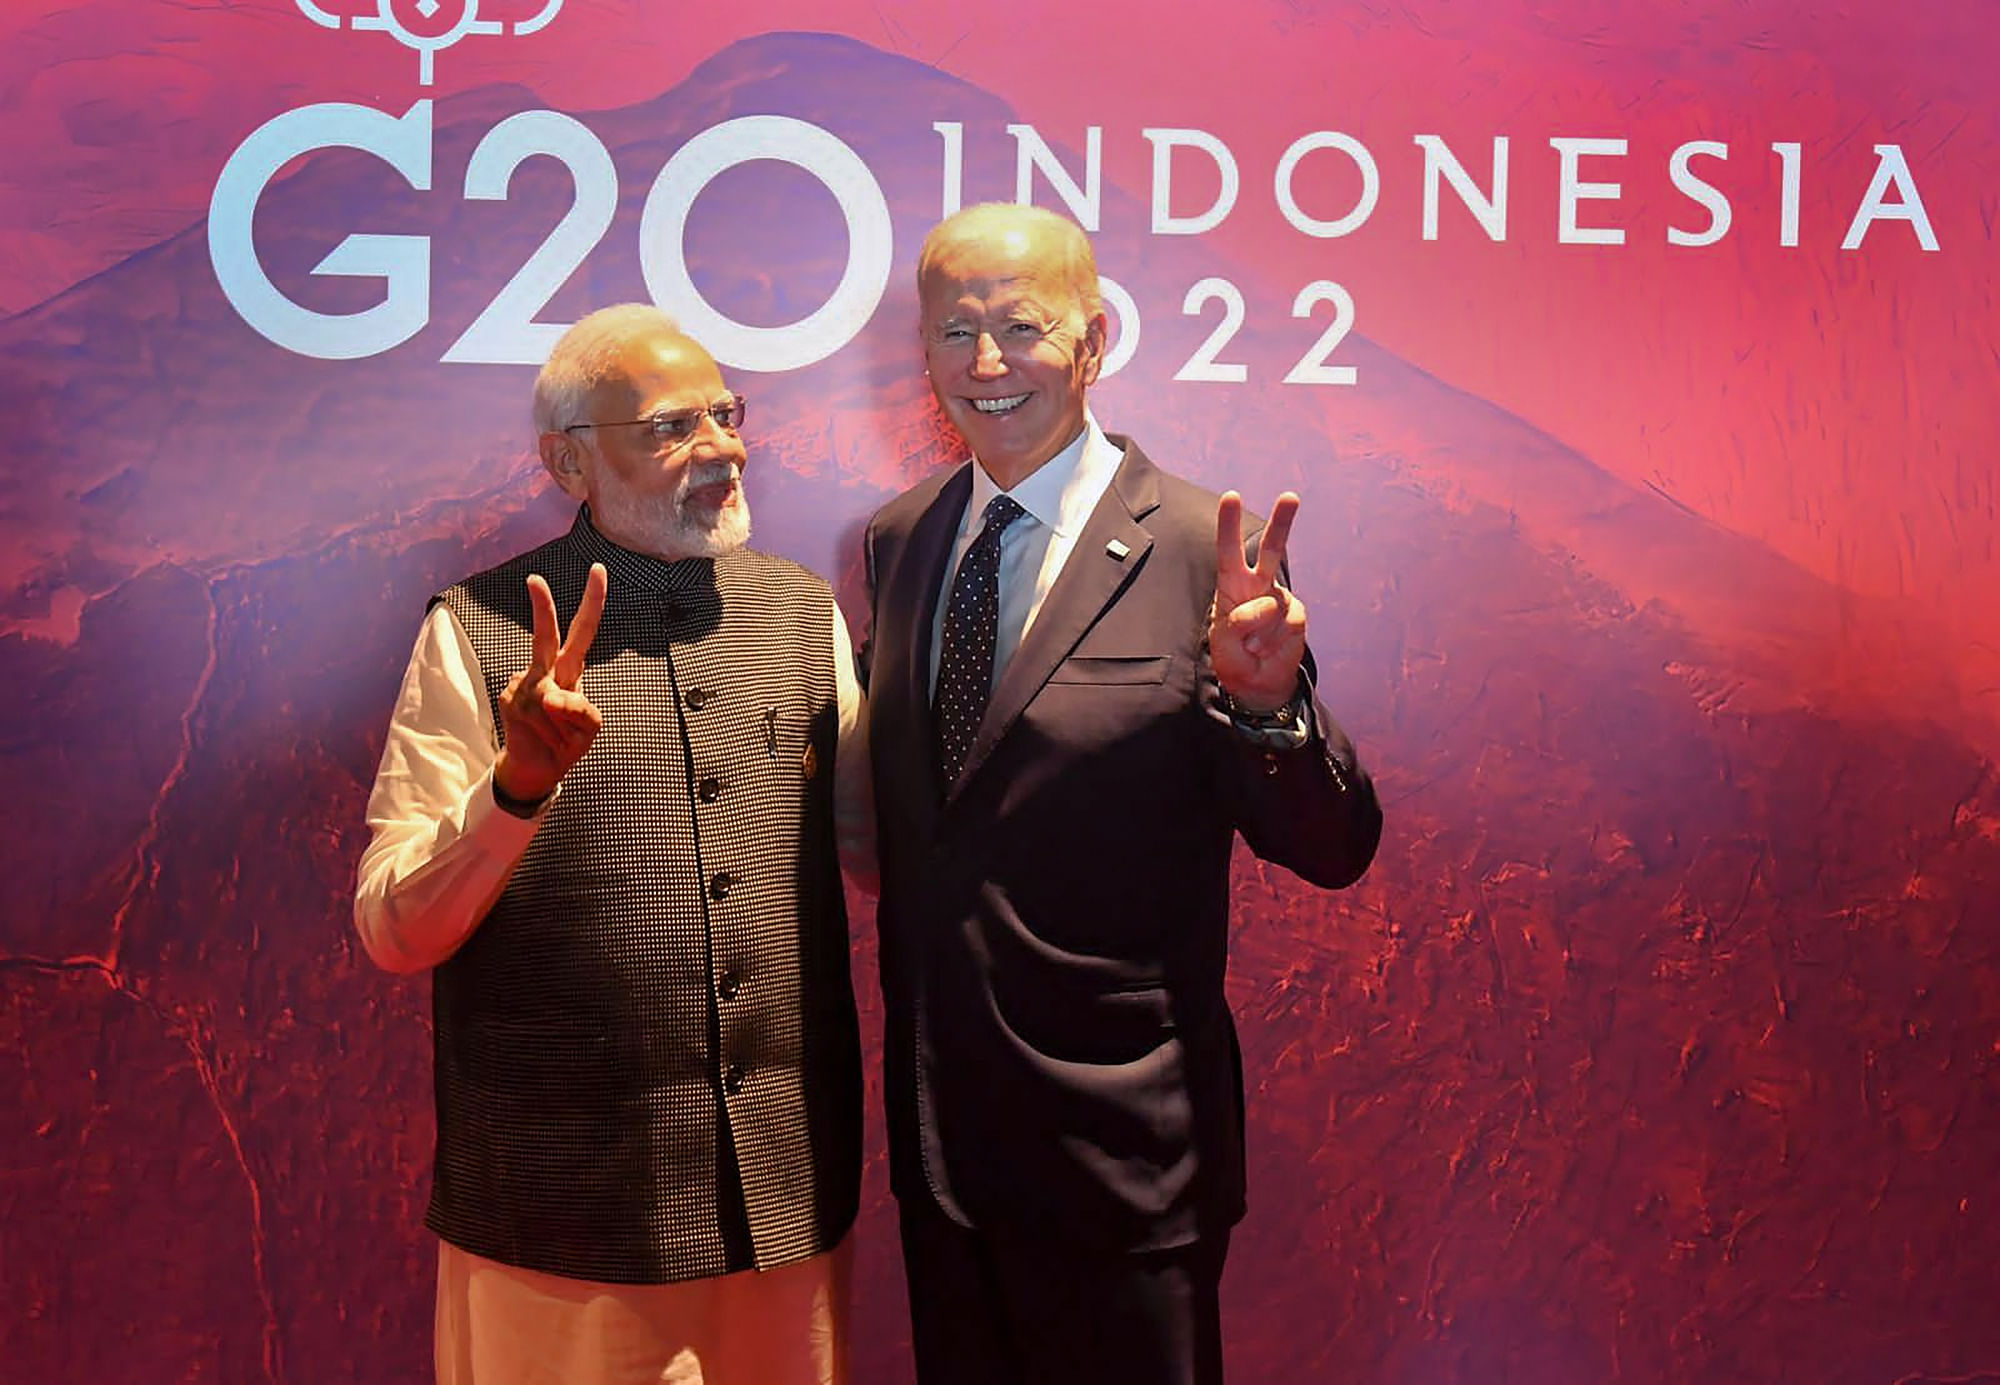 <div class="paragraphs"><p>G20 Summit के दौरान अमेरिकी राष्ट्रपति जो बाइडेन के साथ प्रधानमंत्री नरेंद्र मोदी</p></div>